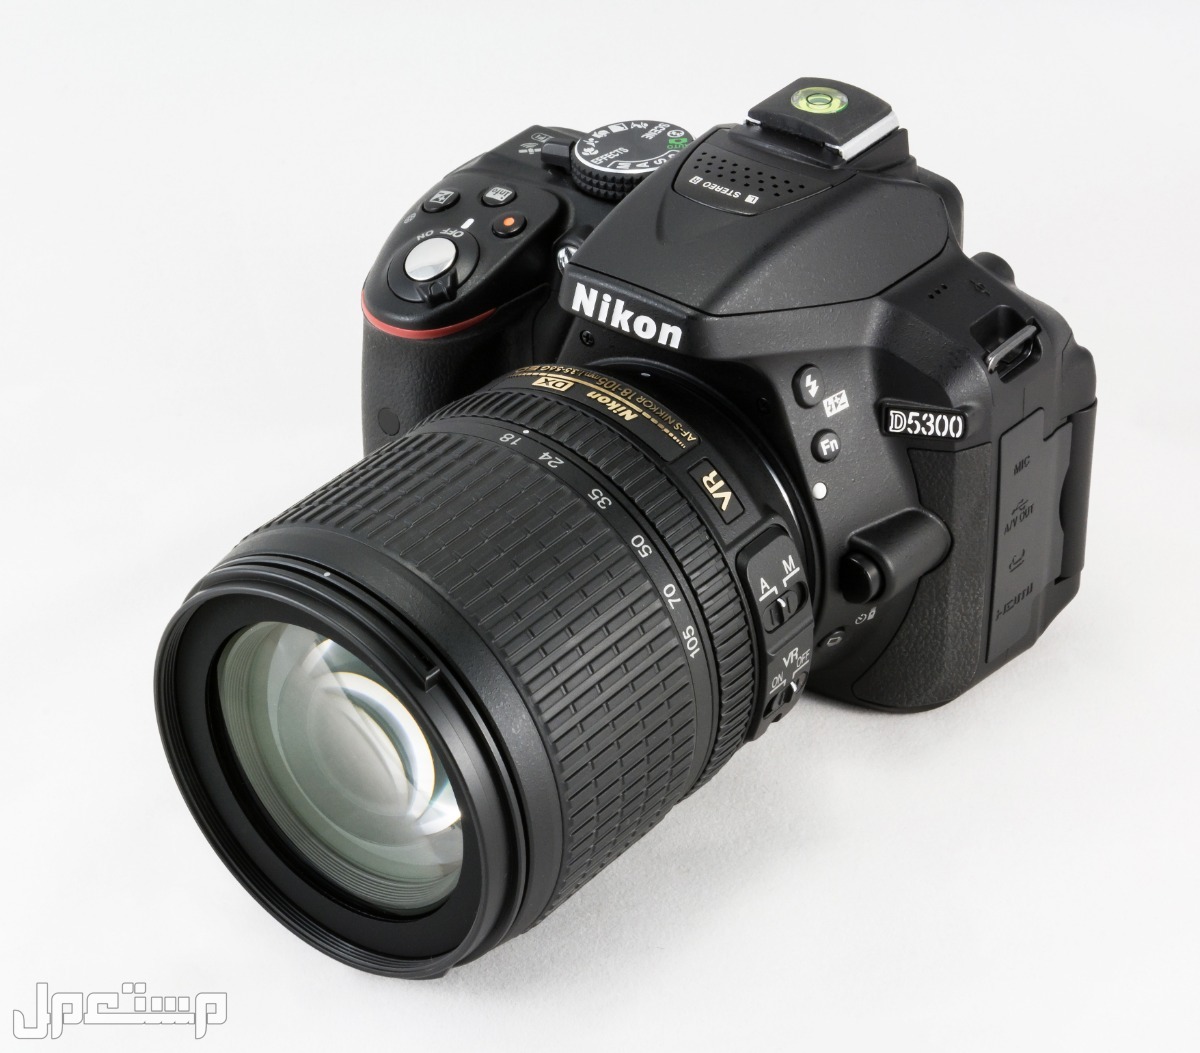 مواصفات ومميزات وأسعار أفضل أنواع كاميرات نيكون للمحترفين في الكويت كاميرا Nikon D5300